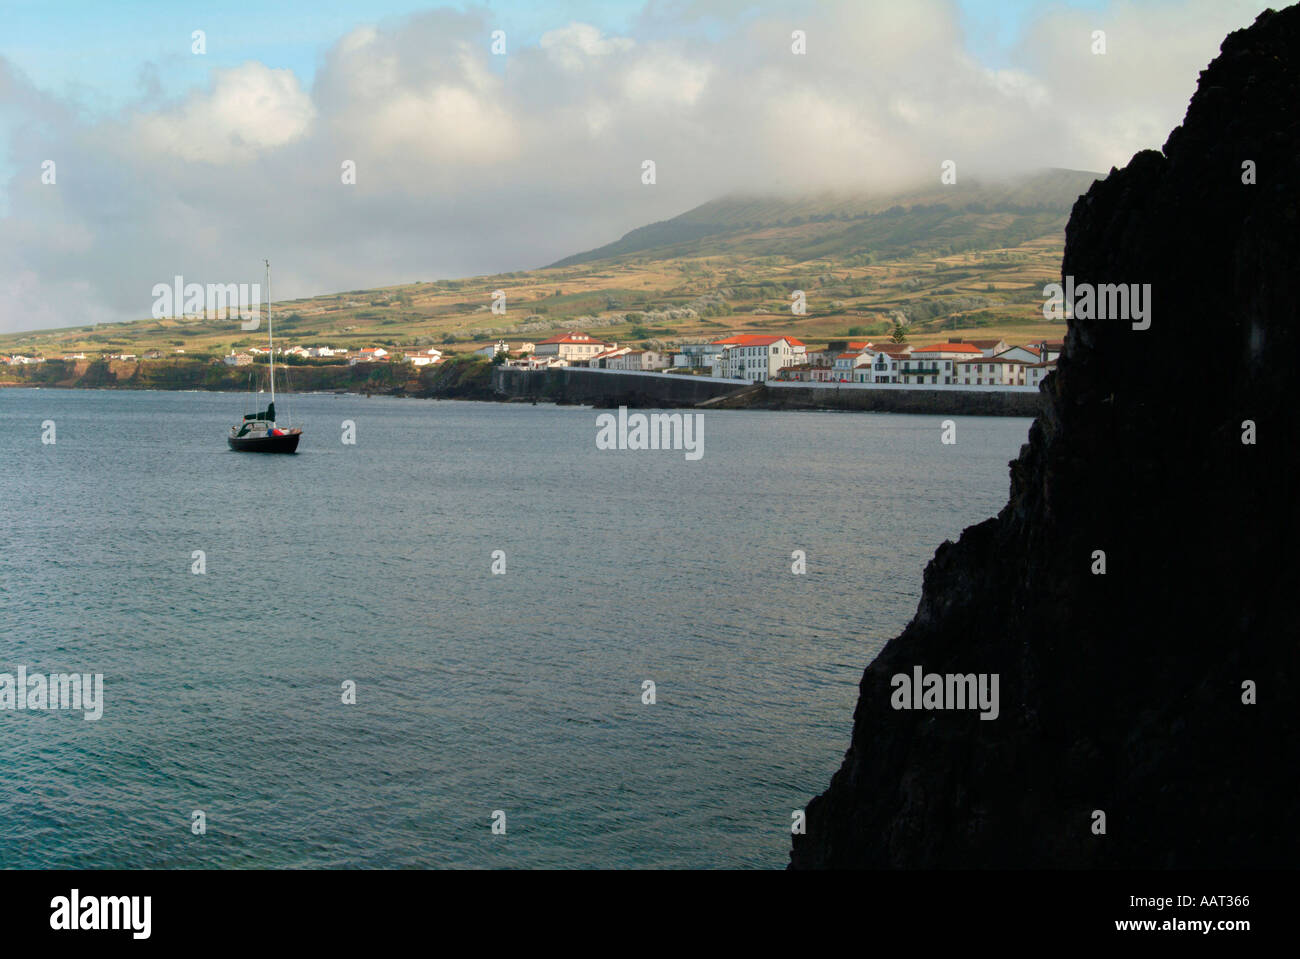 Le village de Praia sur l'île de Graciosa aux Açores, Portugal Banque D'Images